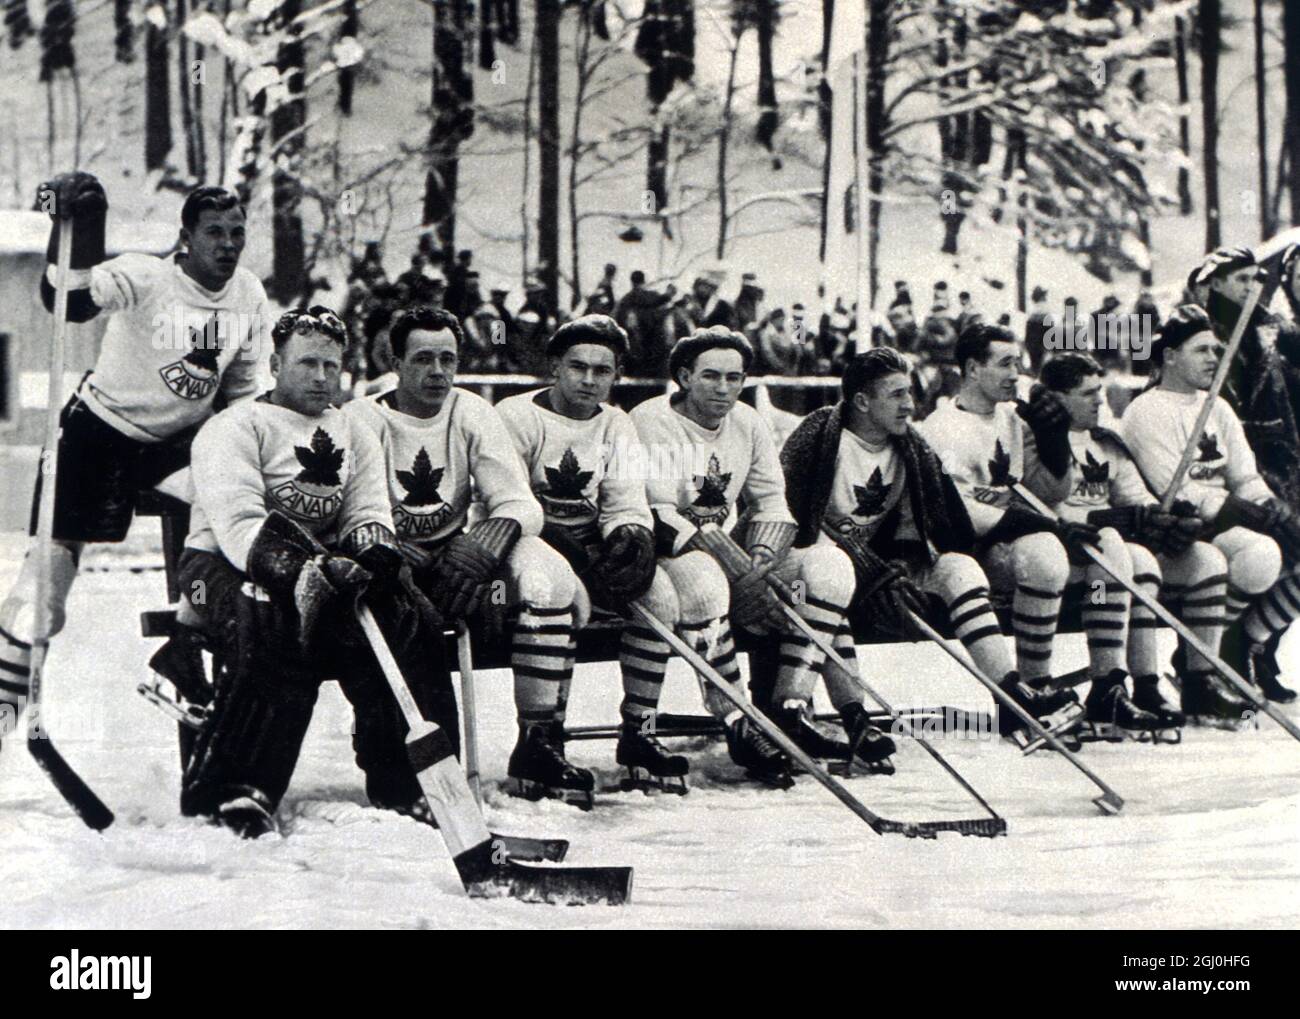 Olympische Winterspiele 1936 - Garmisch und Partenkirchen in Bayern, Deutschland. Die kanadische Eishockeymannschaft, die Favoriten, die nur die Silbermedaille gewinnen konnten, nachdem sie von Großbritannien (hauptsächlich aus kanadischen Ex-Patrioten) geschlagen wurde - ©TopFoto Stockfoto